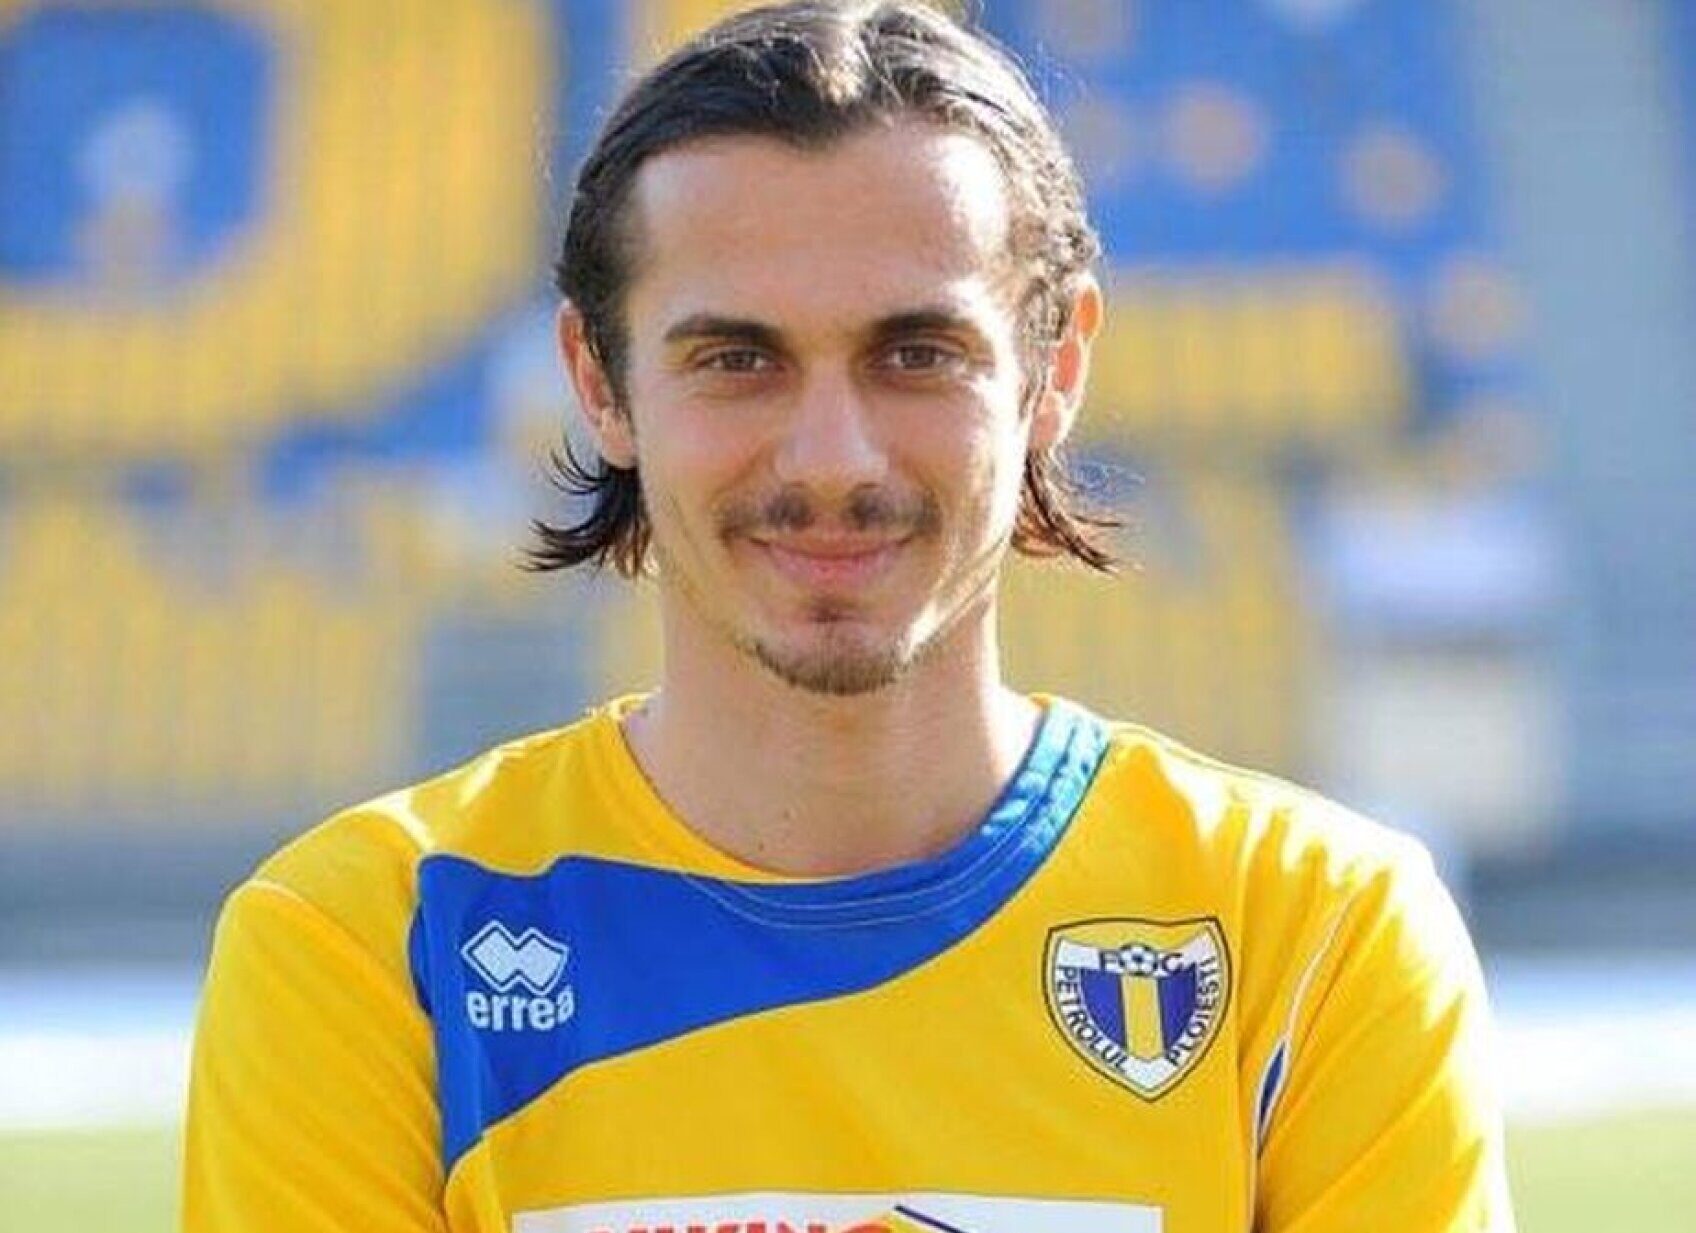 Roland Stănescu s-a sinucis la 32 de ani. A jucat fotbal la Petrolul Ploieşti și FC Argeş